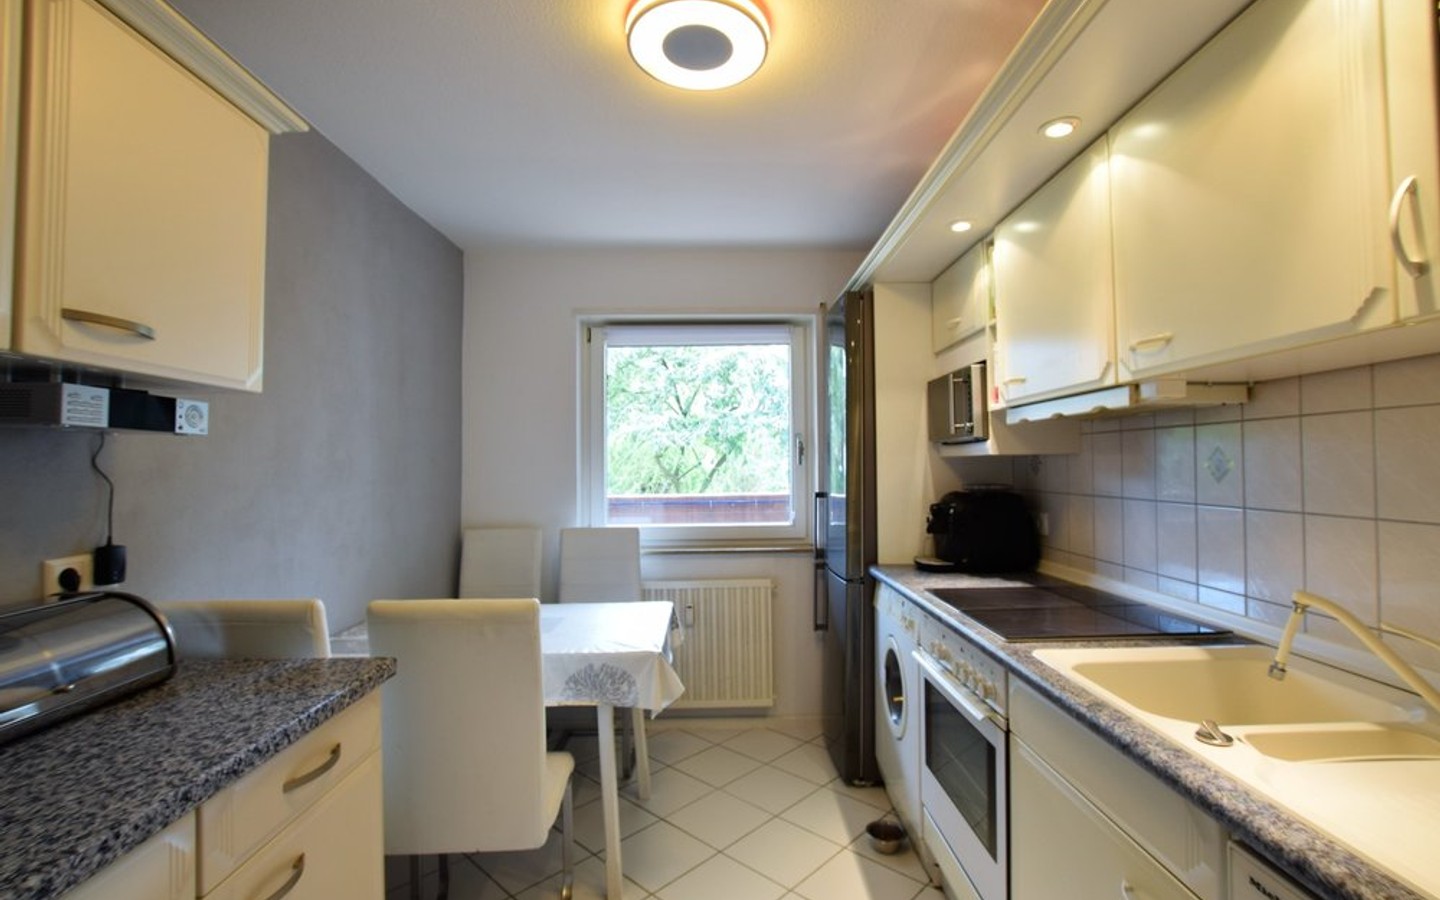 Küche - Leimen: Schöne und zentral gelegene Zweizimmerwohnung mit Blick ins Grüne